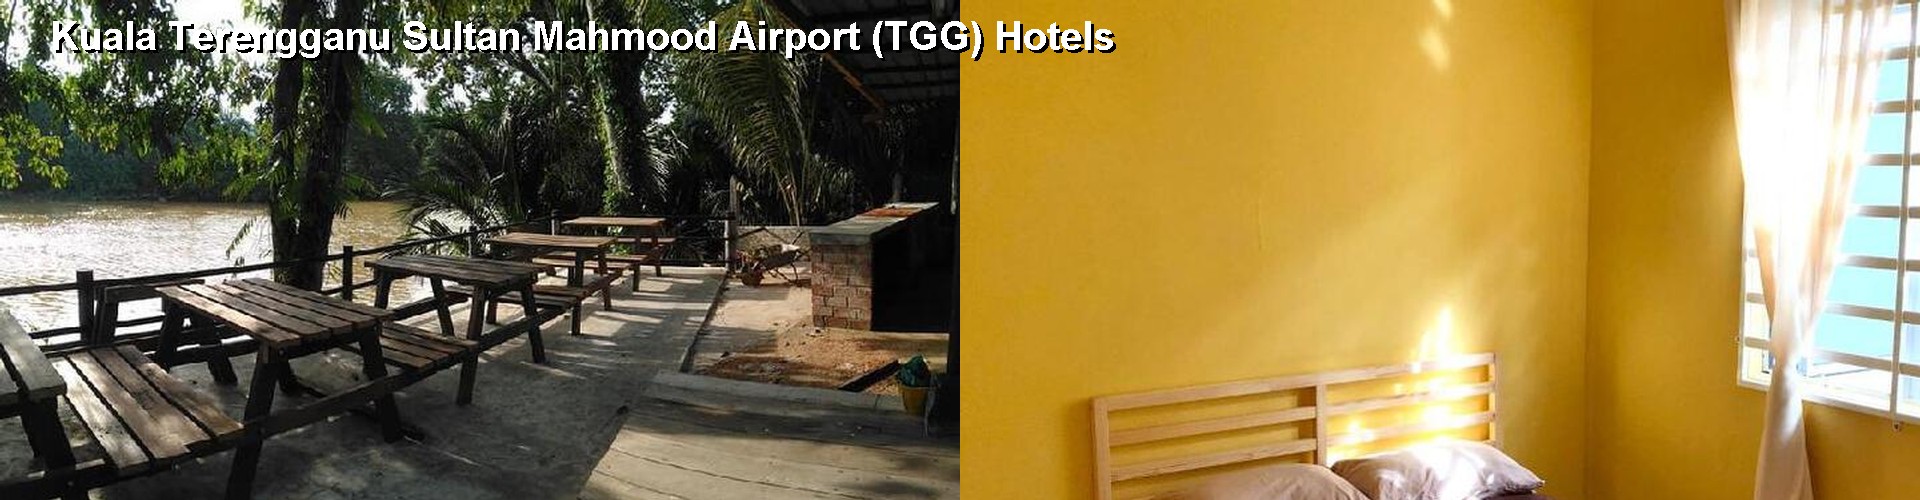 3 Best Hotels near Kuala Terengganu Sultan Mahmood Airport (TGG)